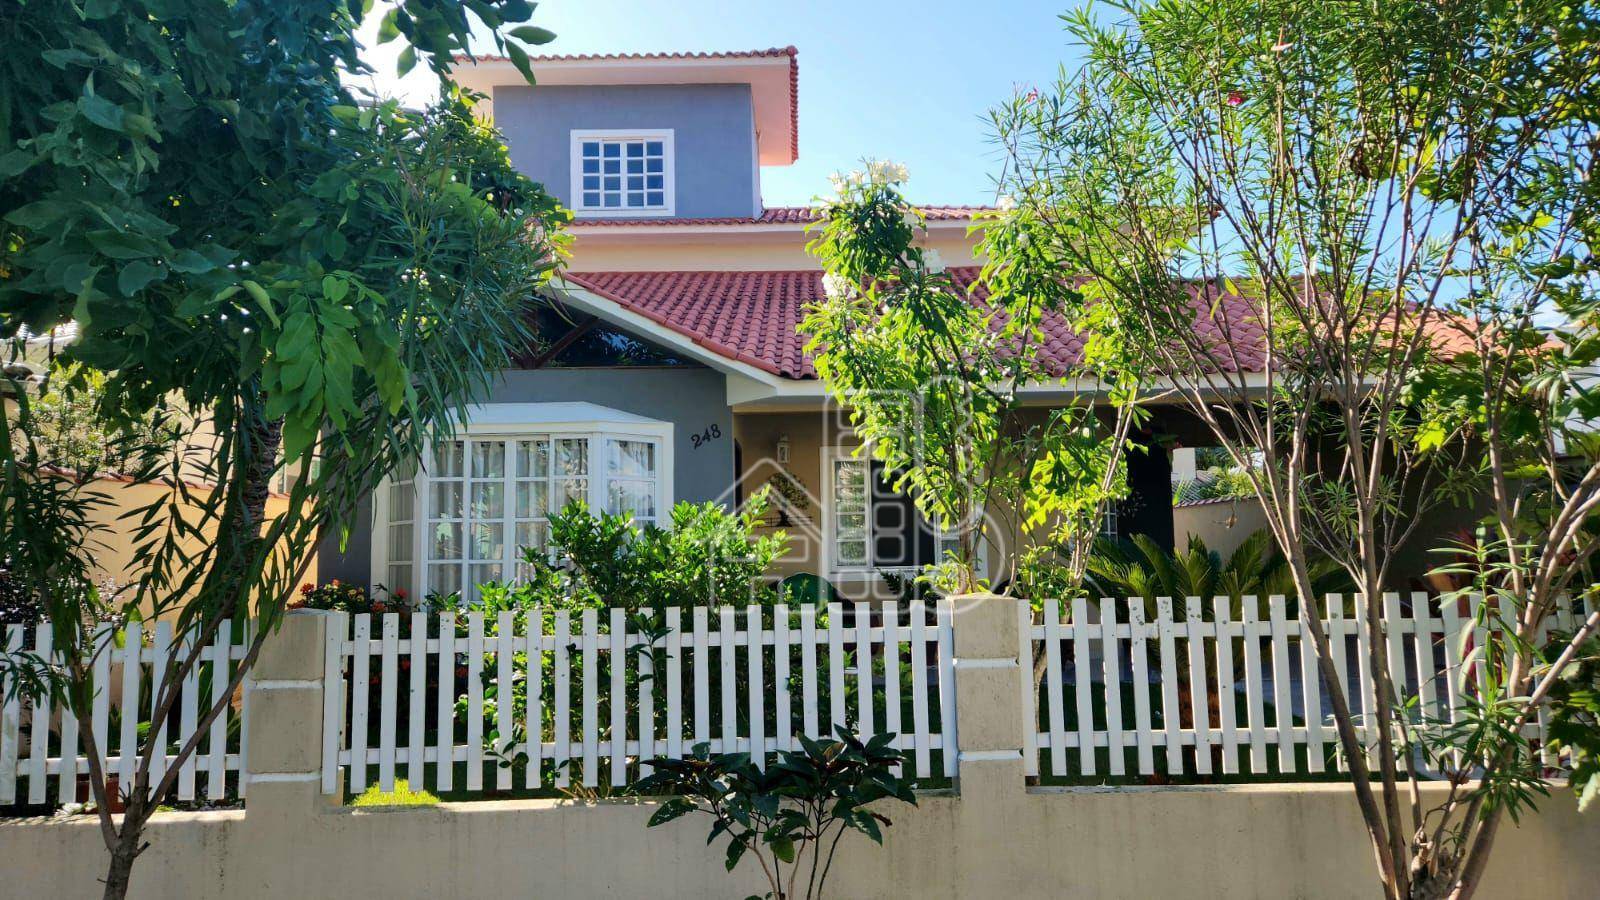 Casa com 4 dormitórios à venda, 258 m² por R$ 2.000.000,00 - São José do Imbassaí - Maricá/RJ